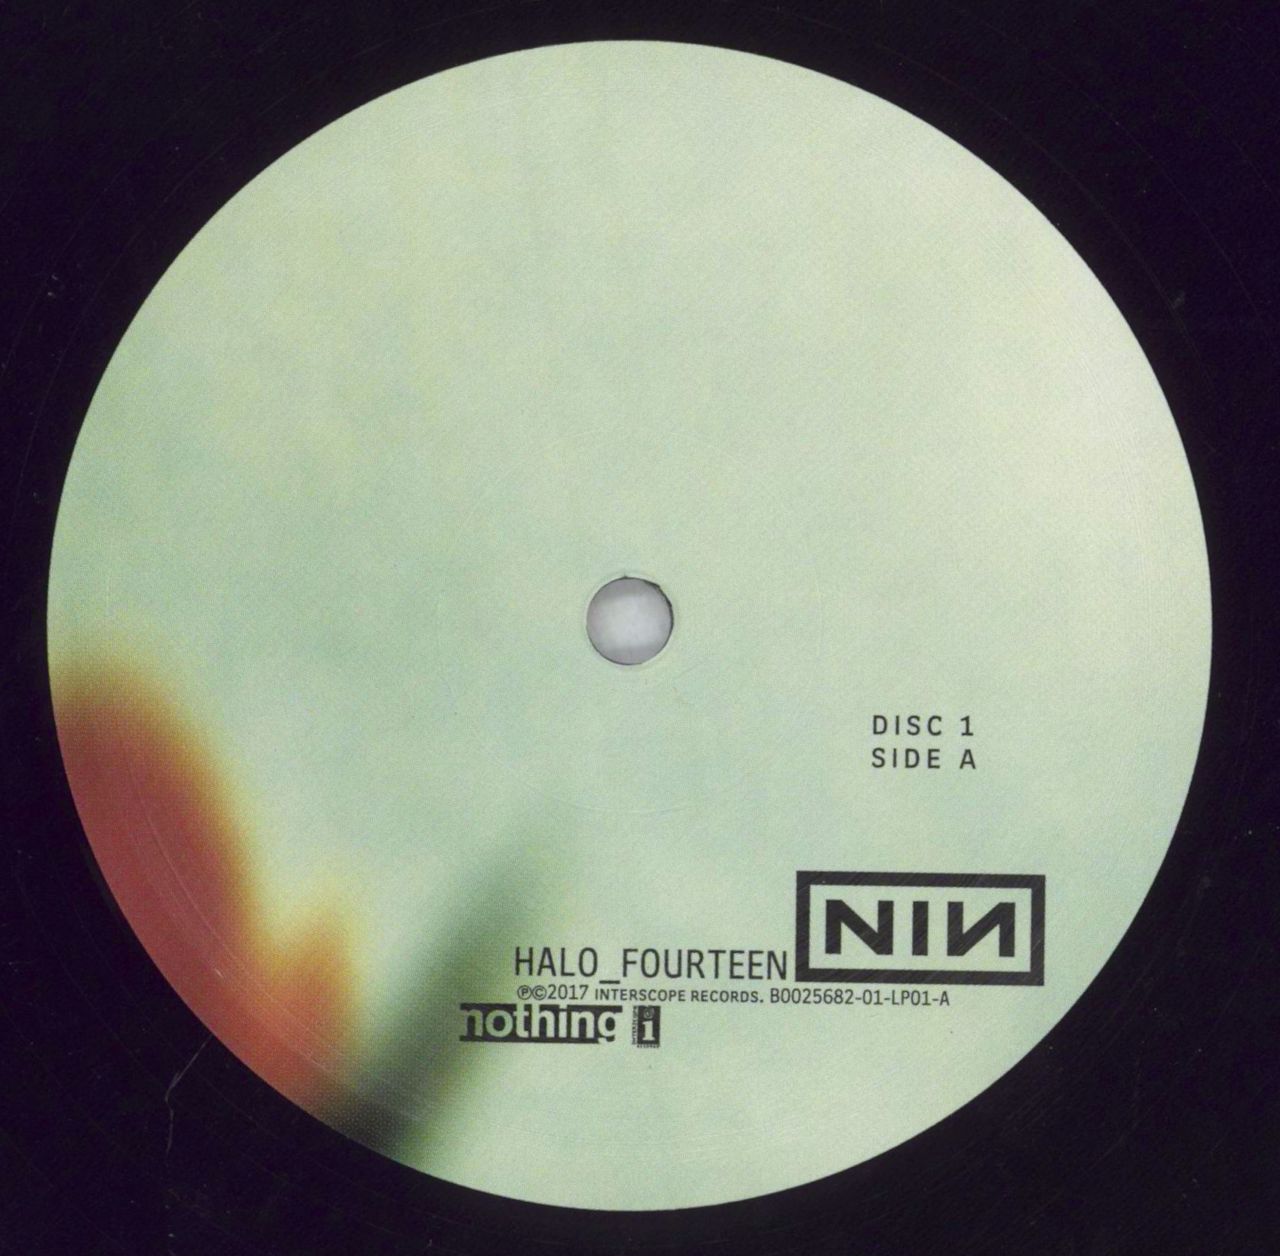 Nine Inch Nails The Fragile - 180gm US 3-LP vinyl set